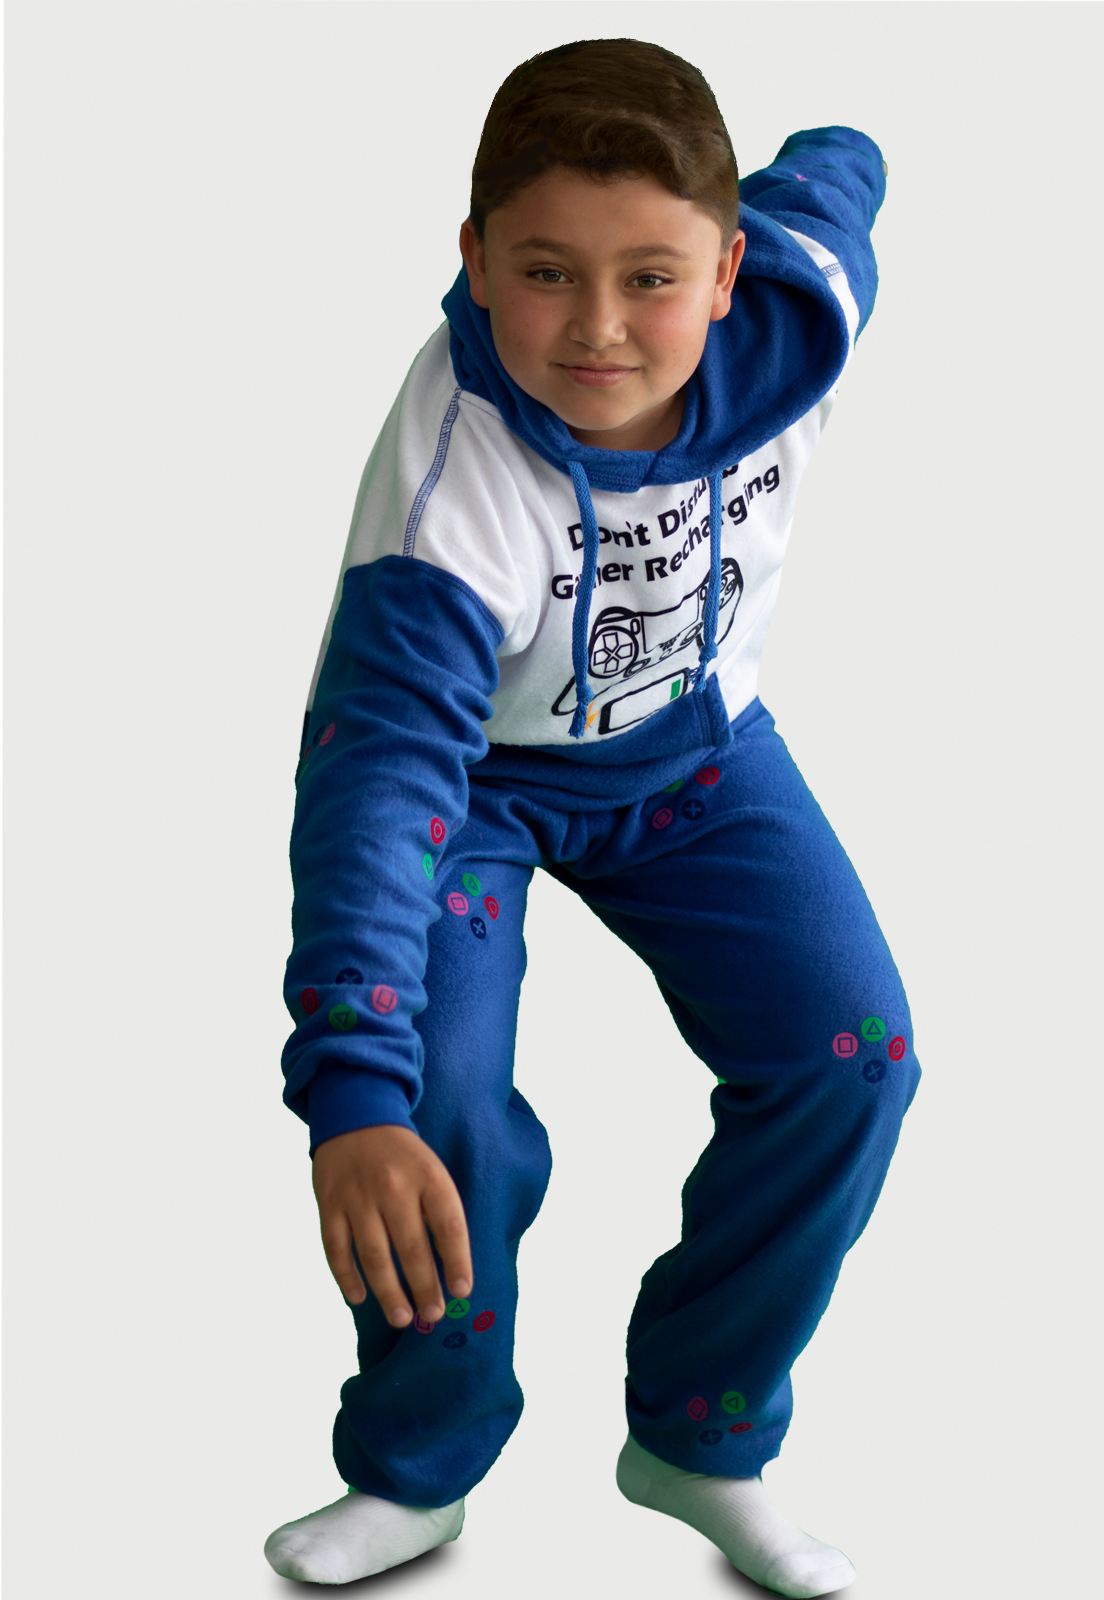 niño con pose de salir corriendo vistiendo una pijama de gamer play station color azul